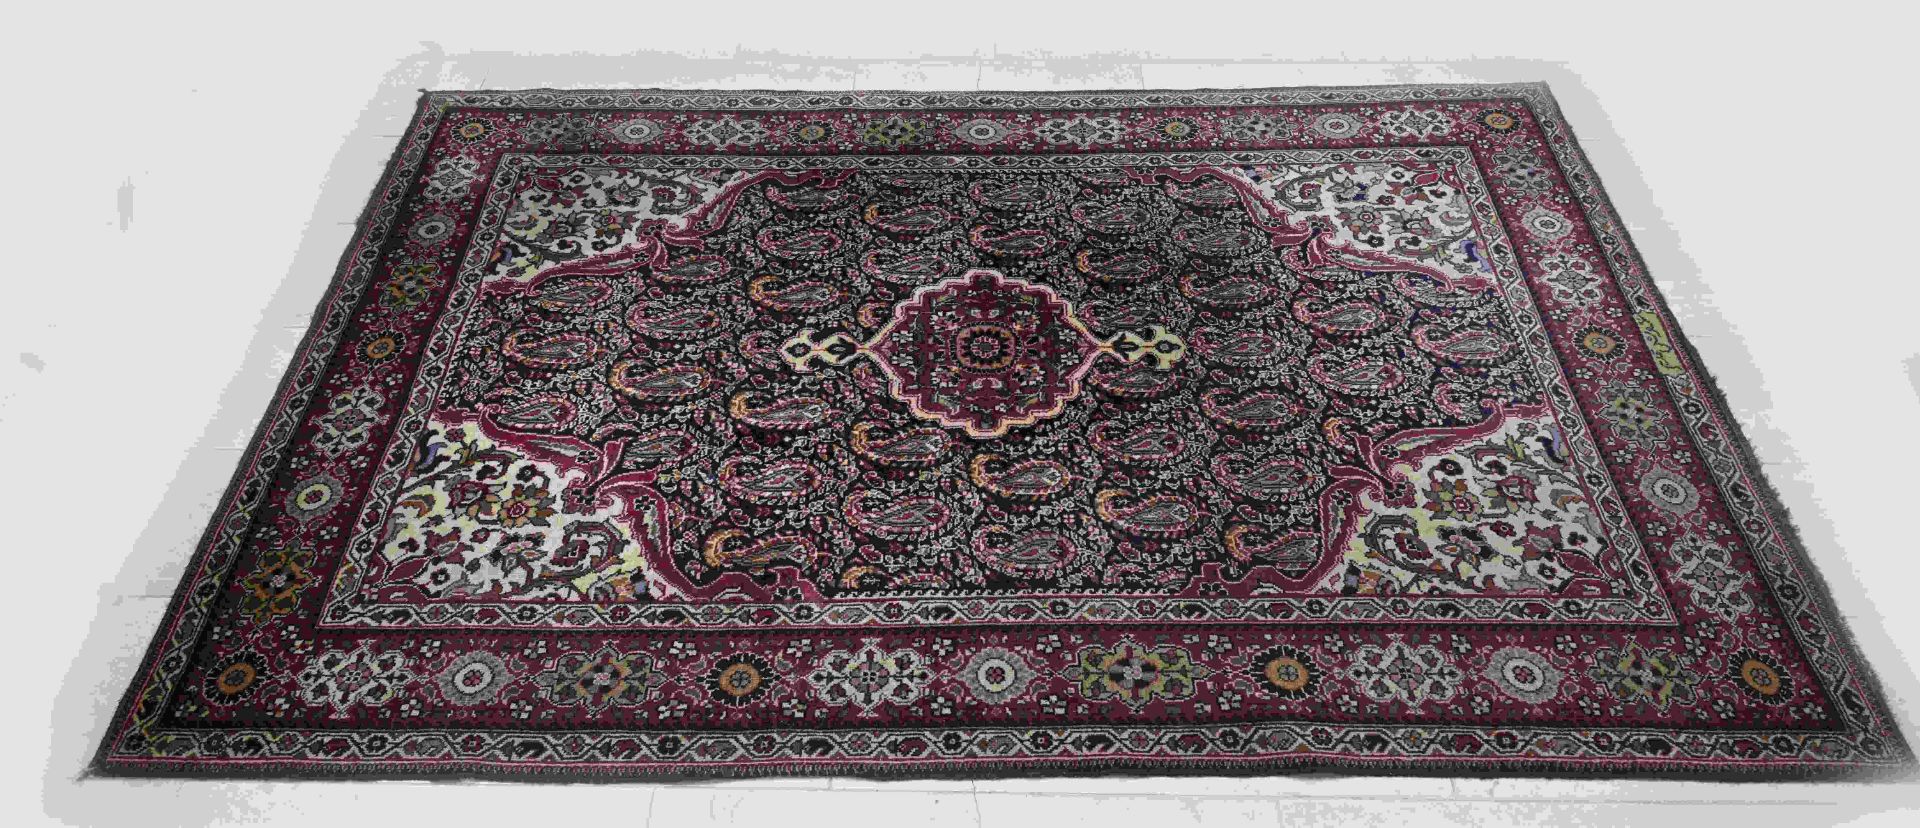 Persian rug, 250 x 165 cm.